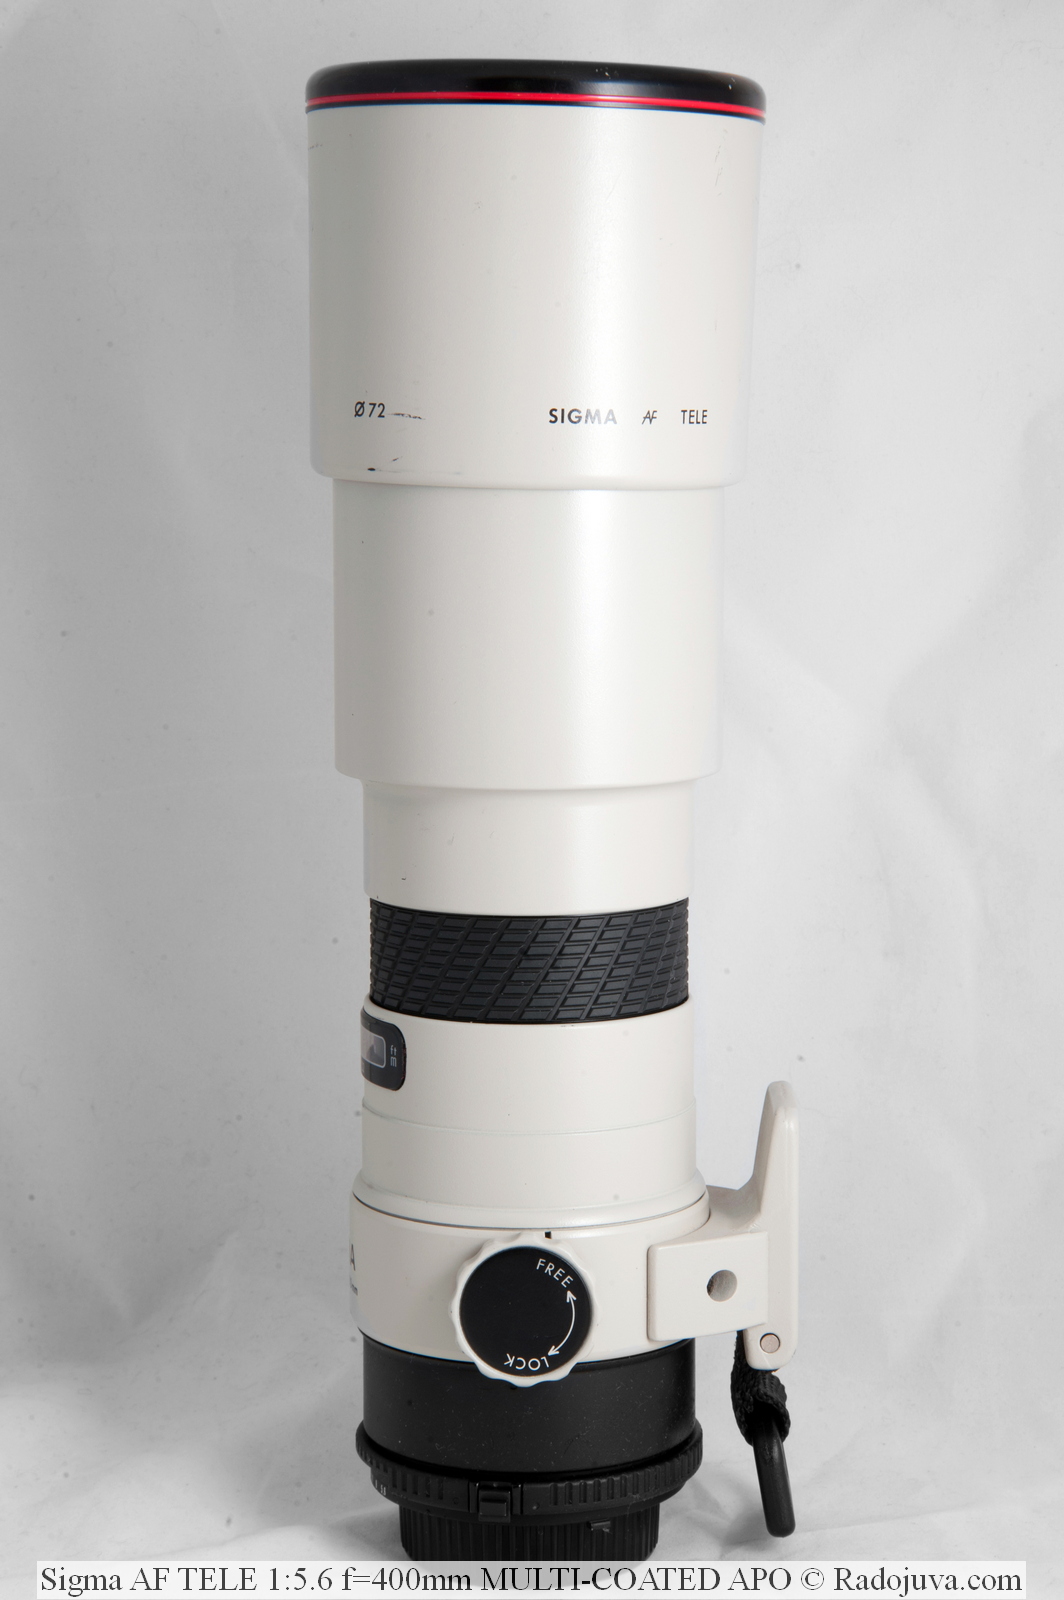 SIGMA AF 400 mm f/5.6 APO TELE